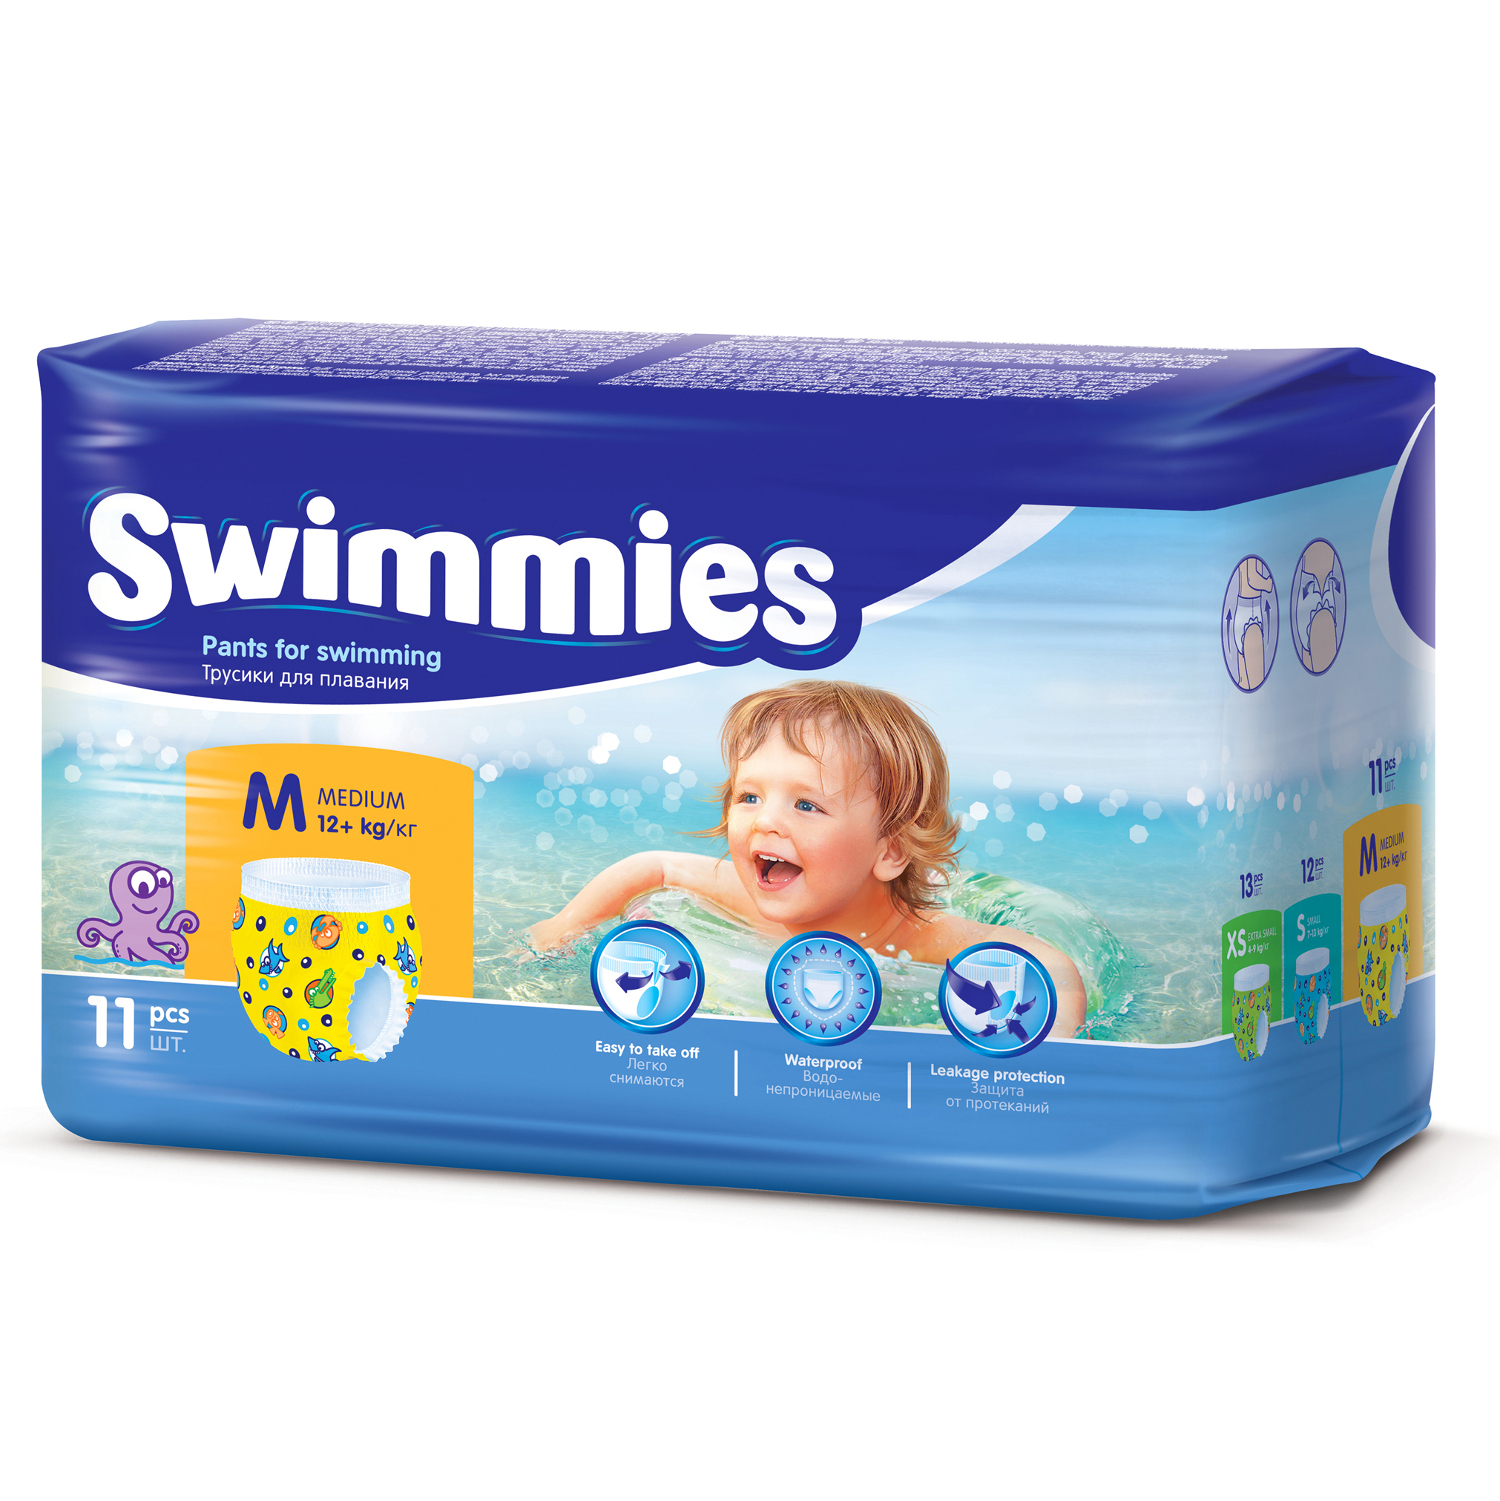 Детские одноразовые трусики для плаванья Swimmies 12 кг + (Medium) - 11 шт